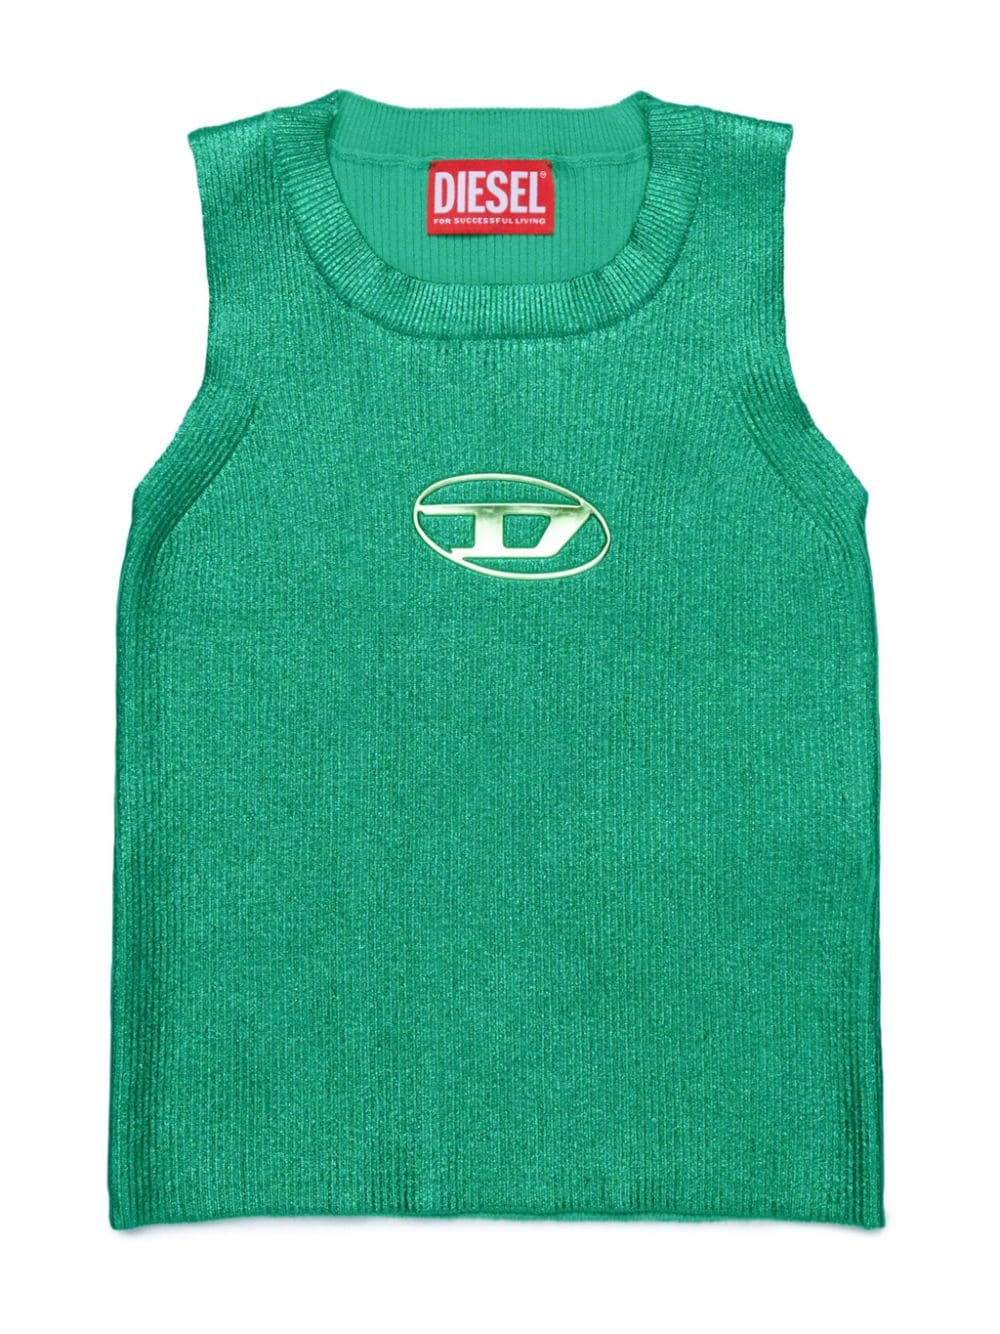 Diesel Kids Oval D logo cotton vest - Green von Diesel Kids